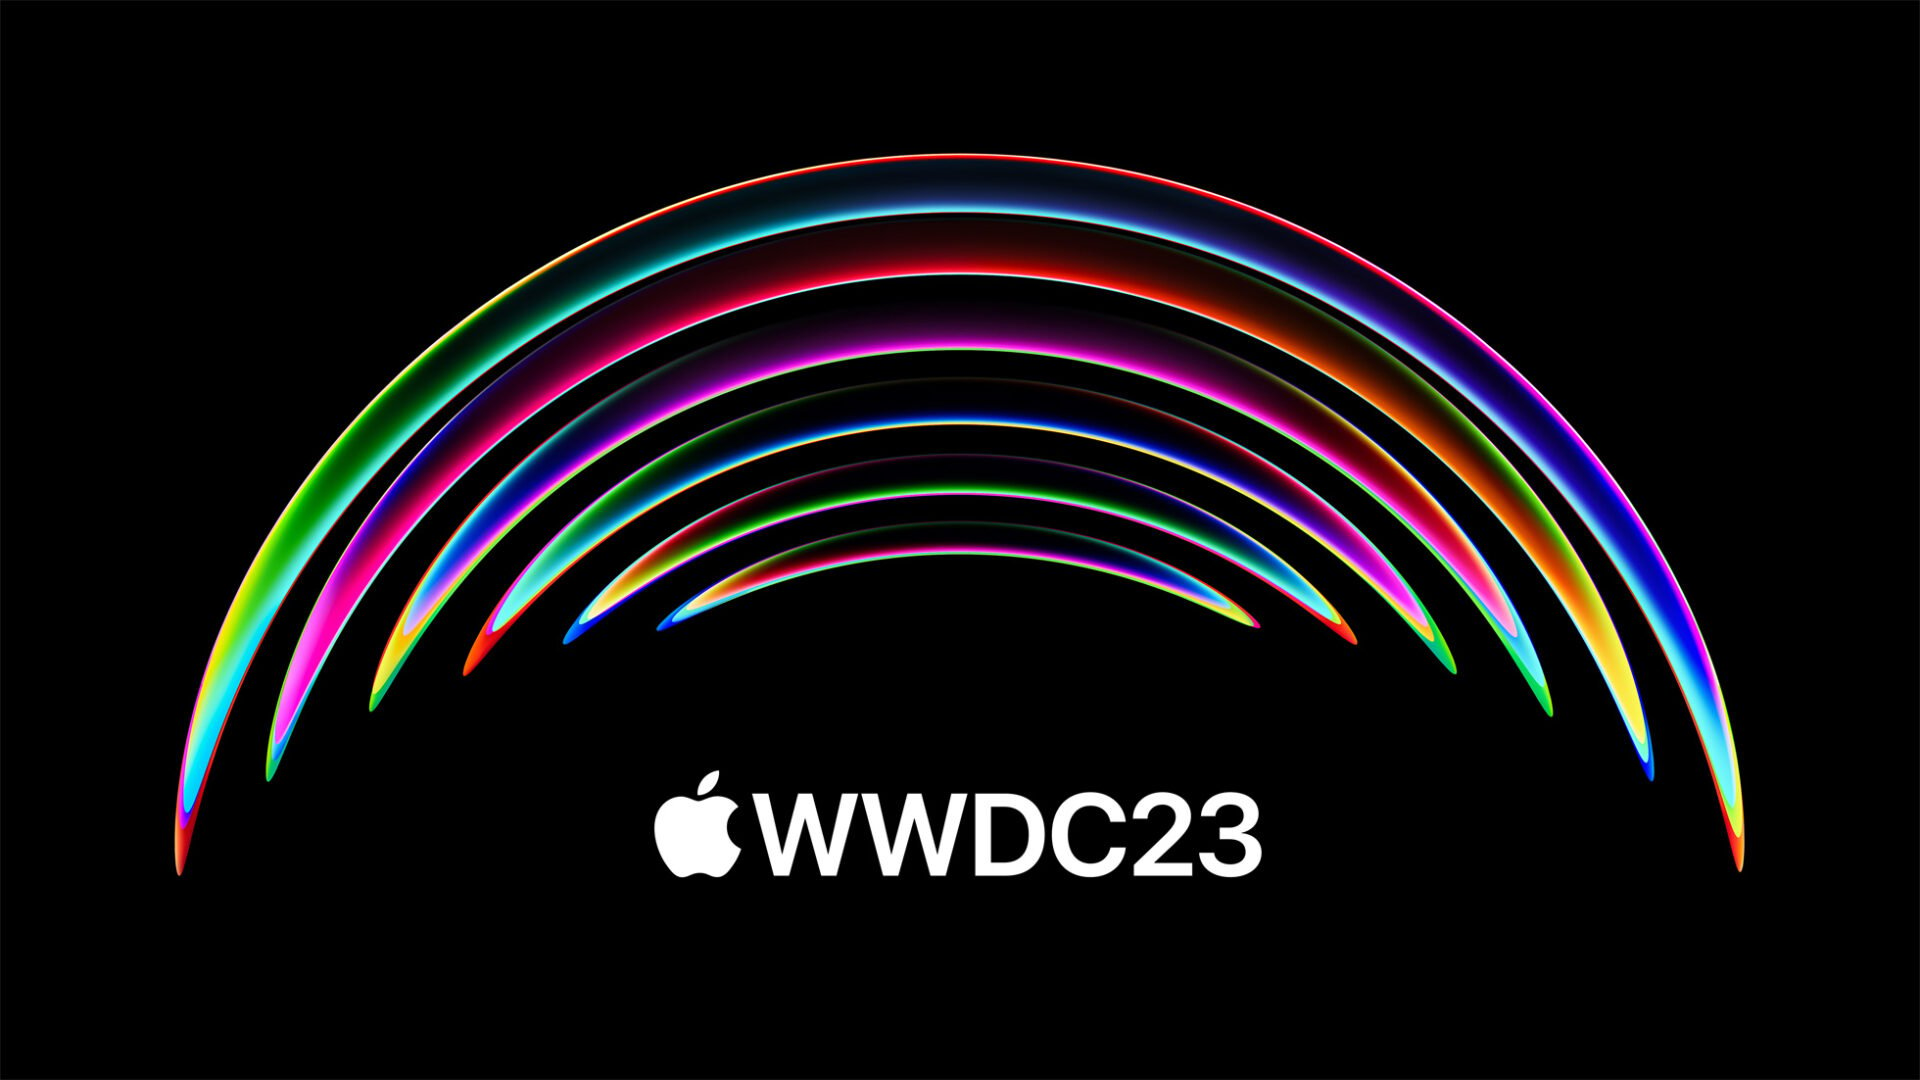 Apple ประกาศจัดงาน WWDC 2023 5-9 มิ.ย. เตรียมเปิดตัว iOS 17 คาดอาจได้เห็นอุปกรณ์ AR/VR ในงานนี้ด้วย